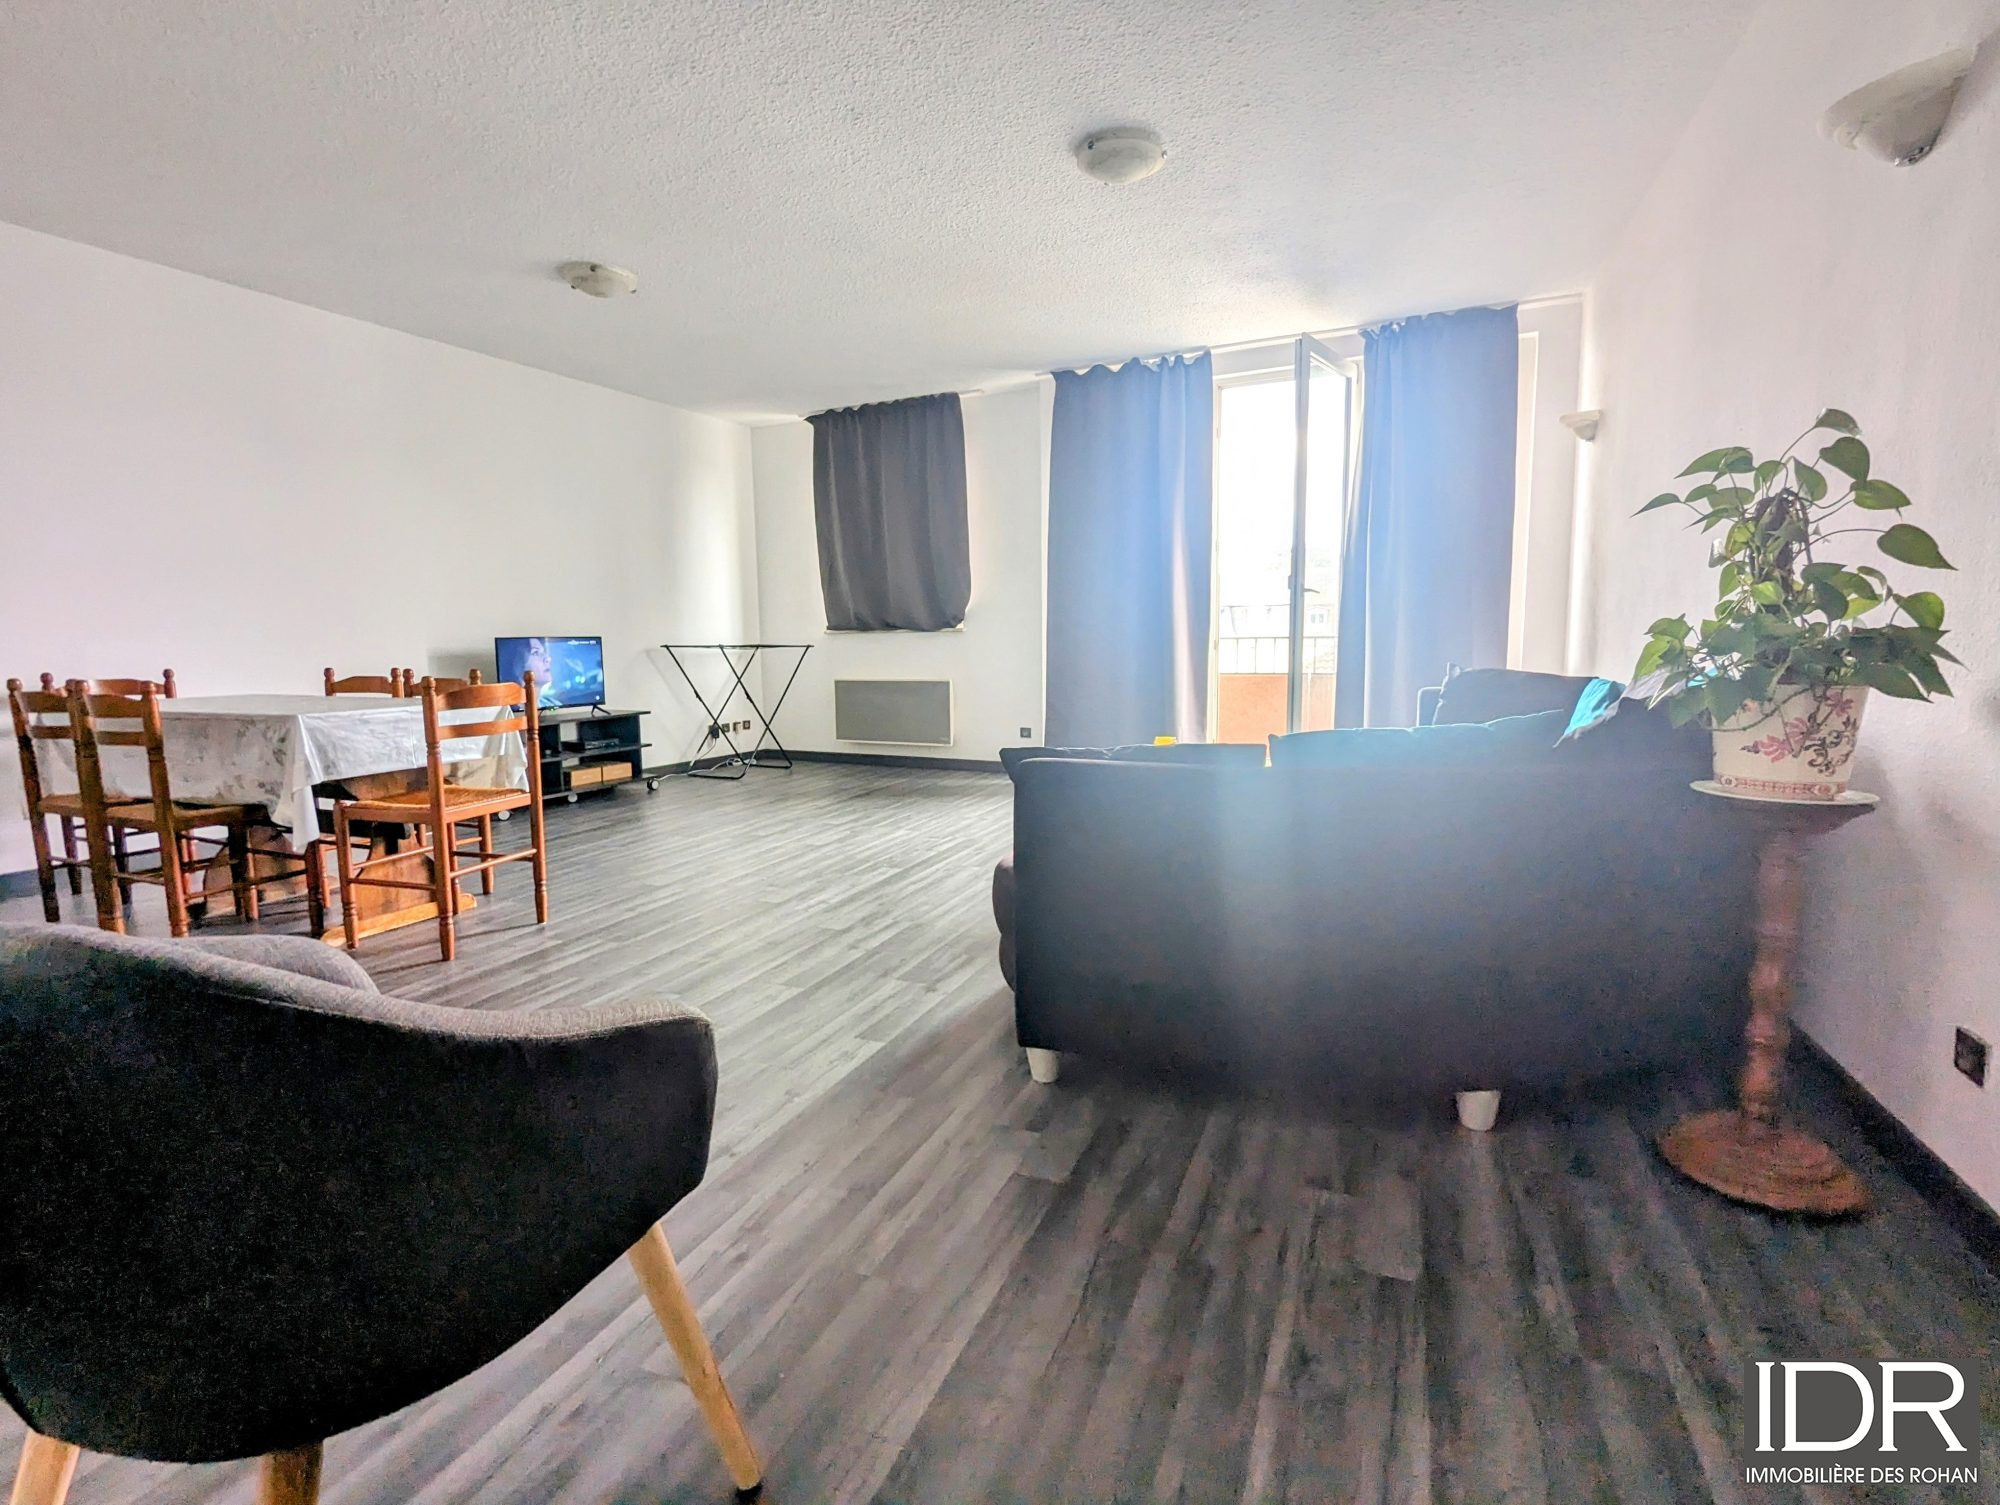 Vente Appartement 75m² 3 Pièces à Sarrebourg (57400) - Immobilière Des Rohan